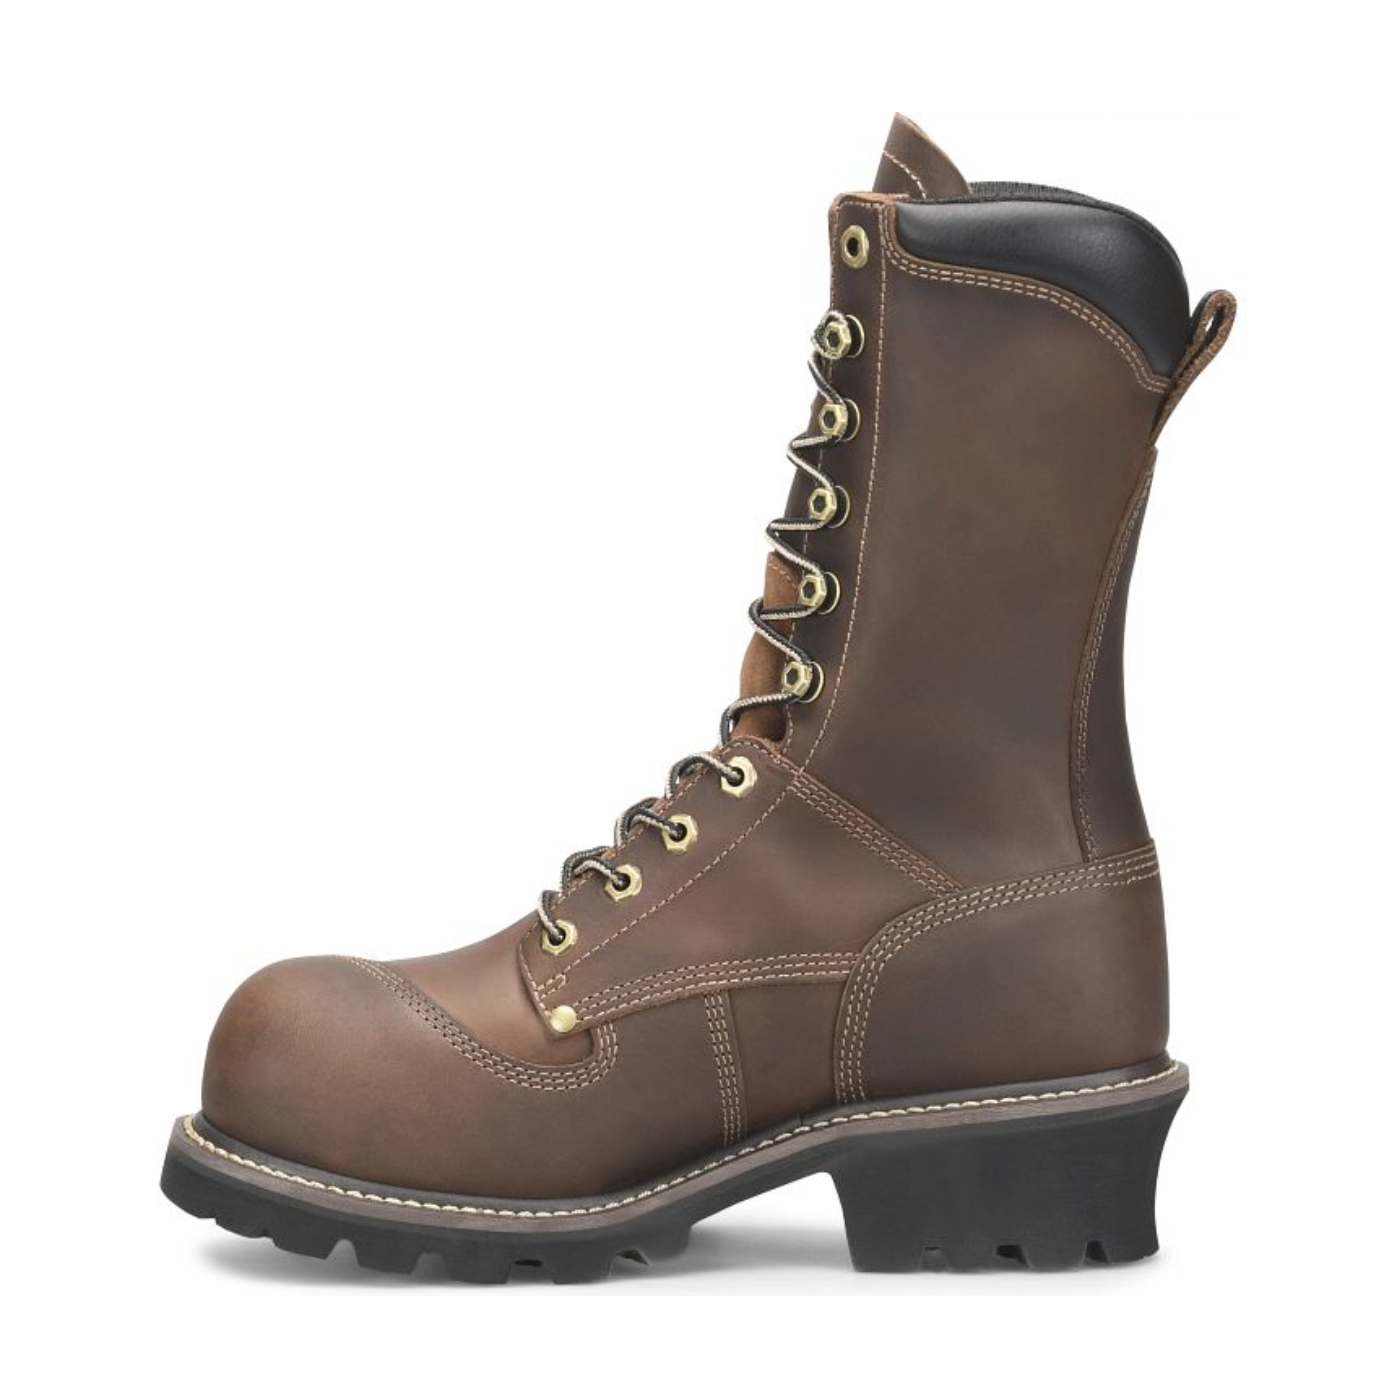 Matterhorn® Men's Arc 10" Dark Brown Composite Toe Logger Boots MT2510